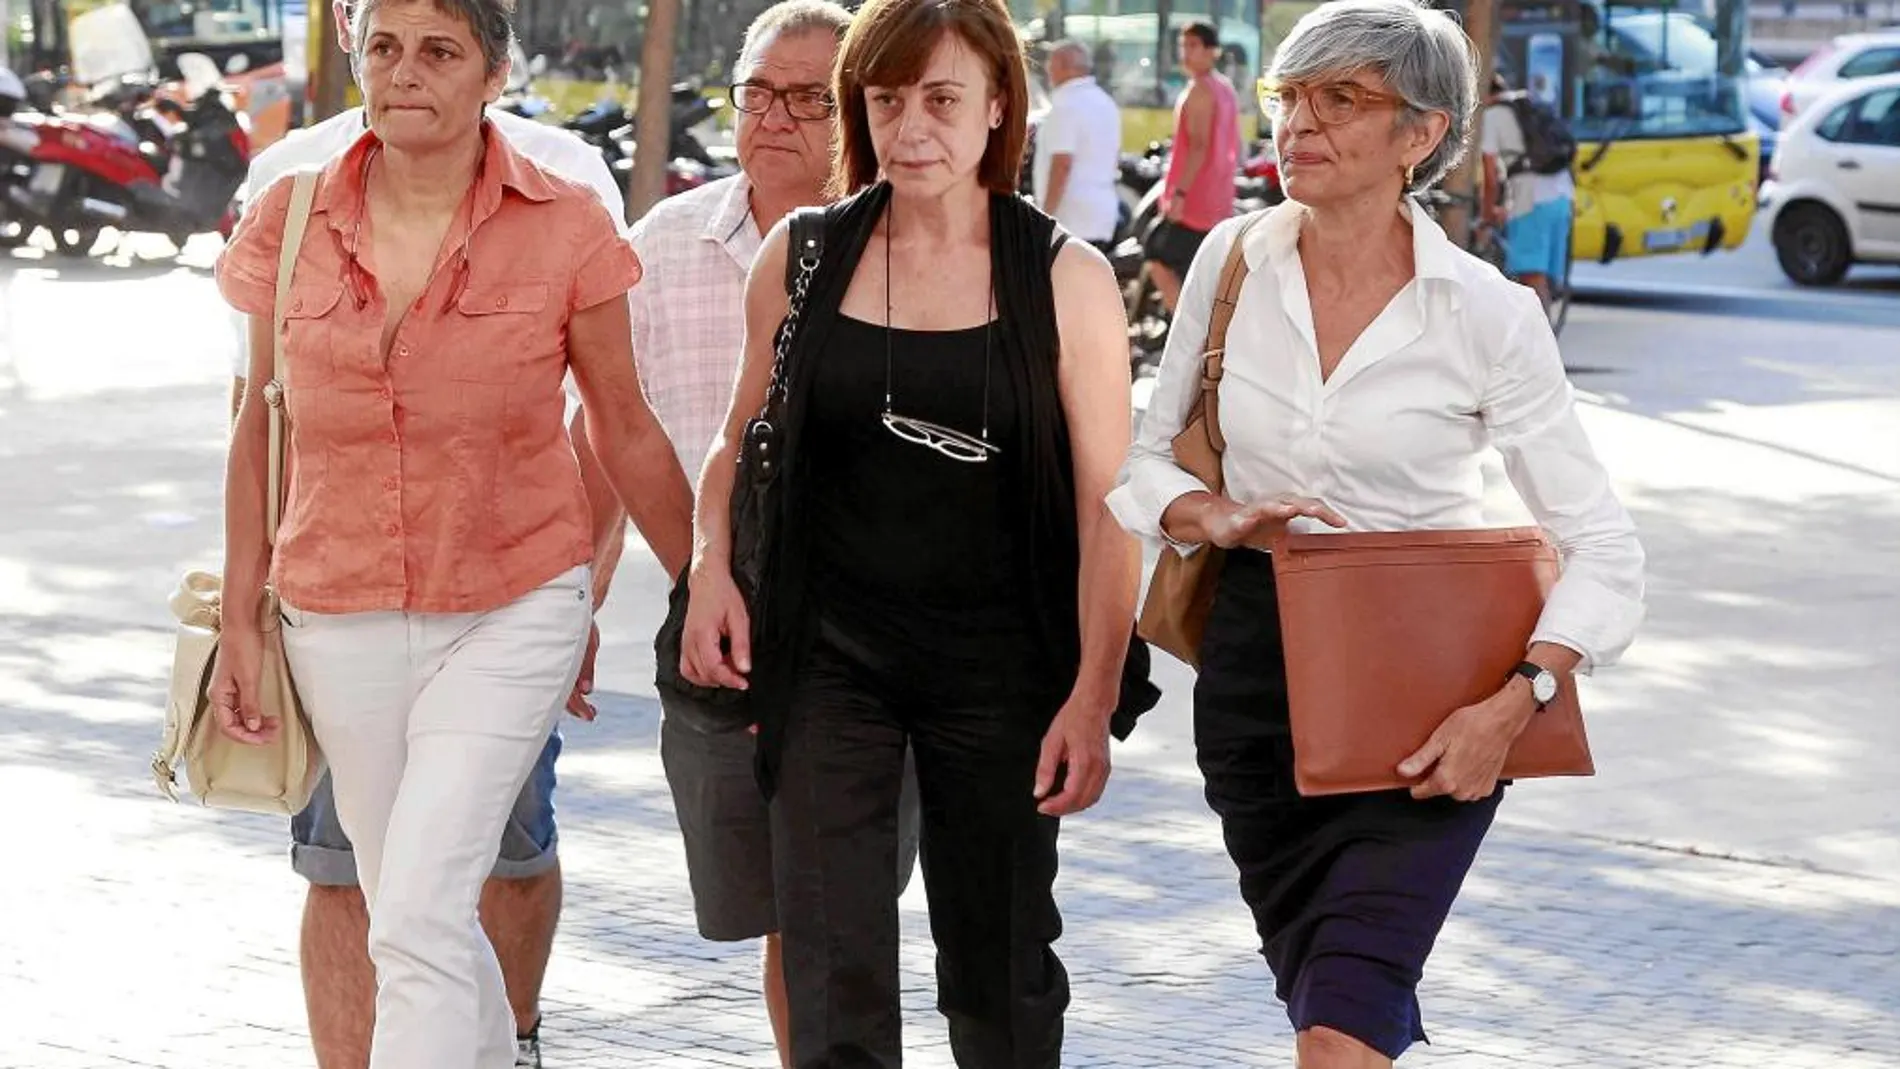 La gerente del PSC, Lluïsa Bruguer, en el medio de la imagen, acudió al juzgado sin lacompañía de miembros del partido, a petición propia